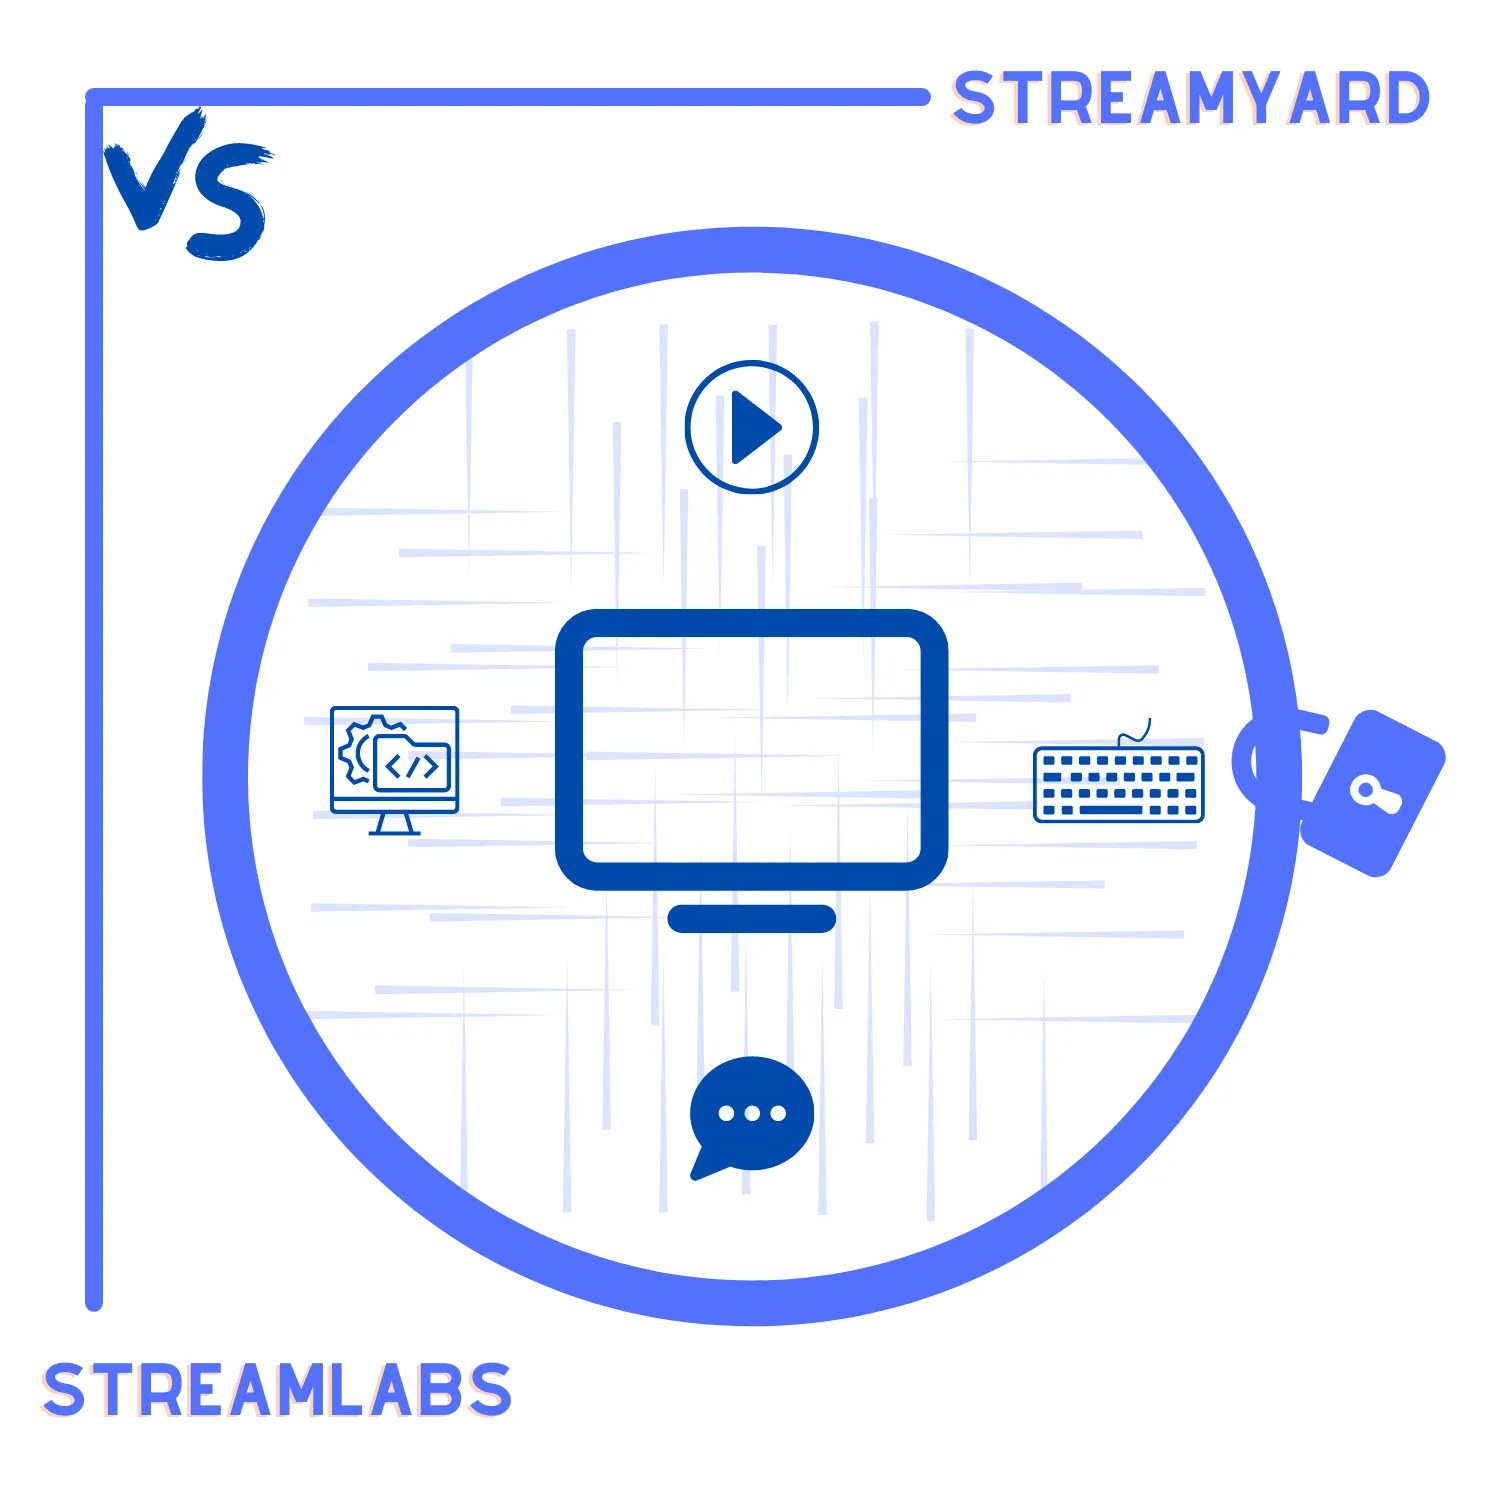 StreamYard vs. Streamlabs